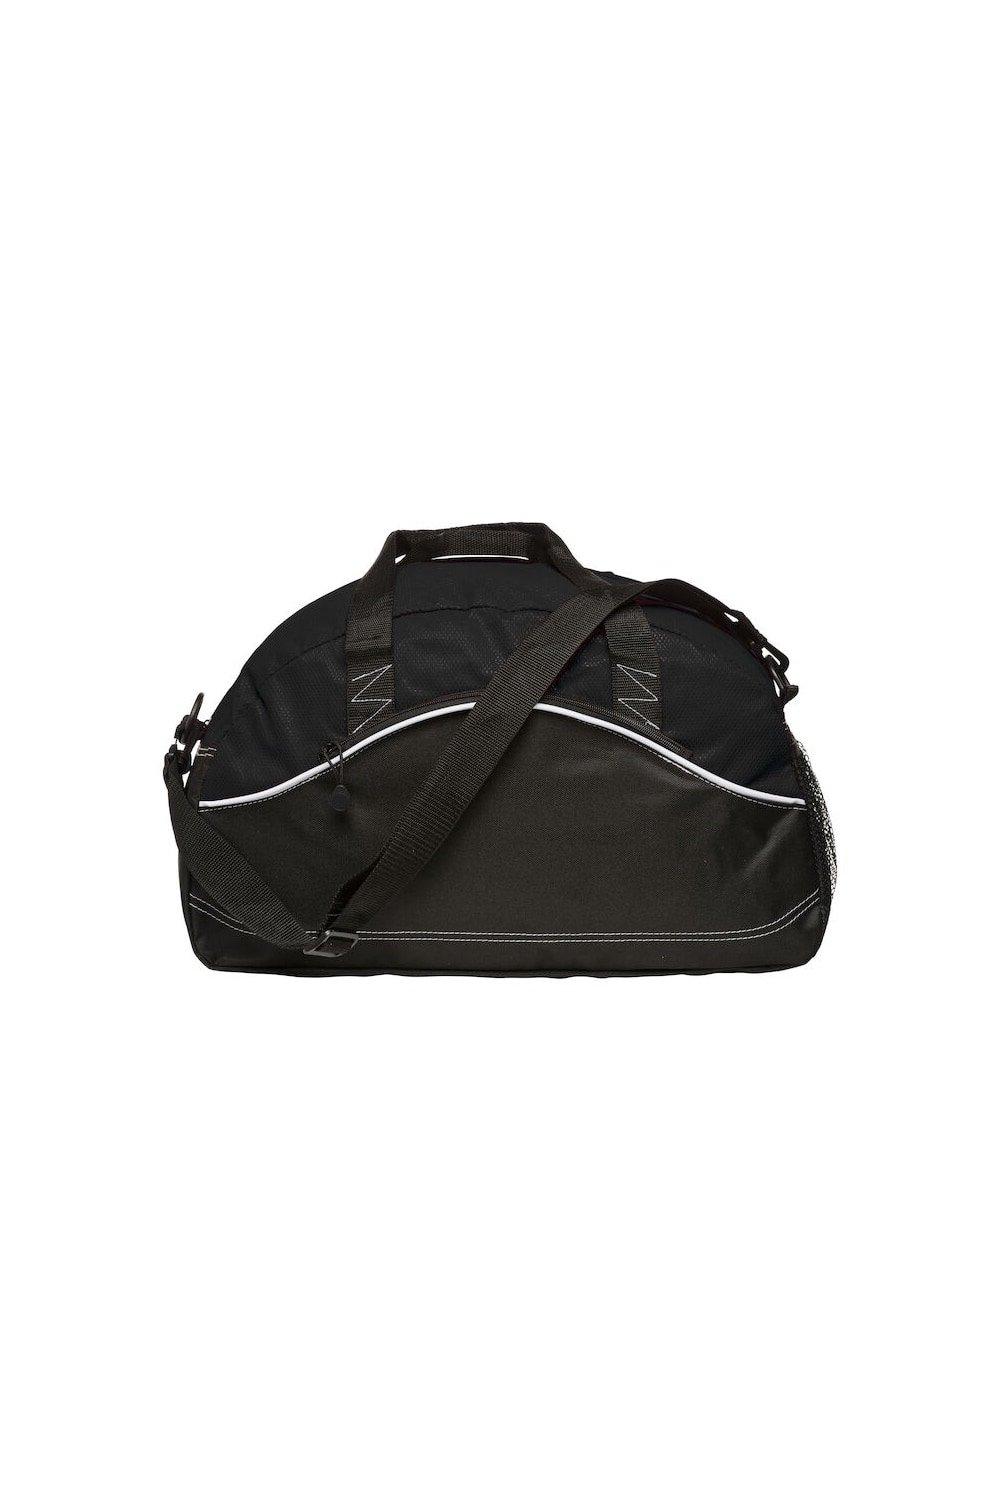 Базовая спортивная сумка Clique, черный базовая спортивная сумка clique синий